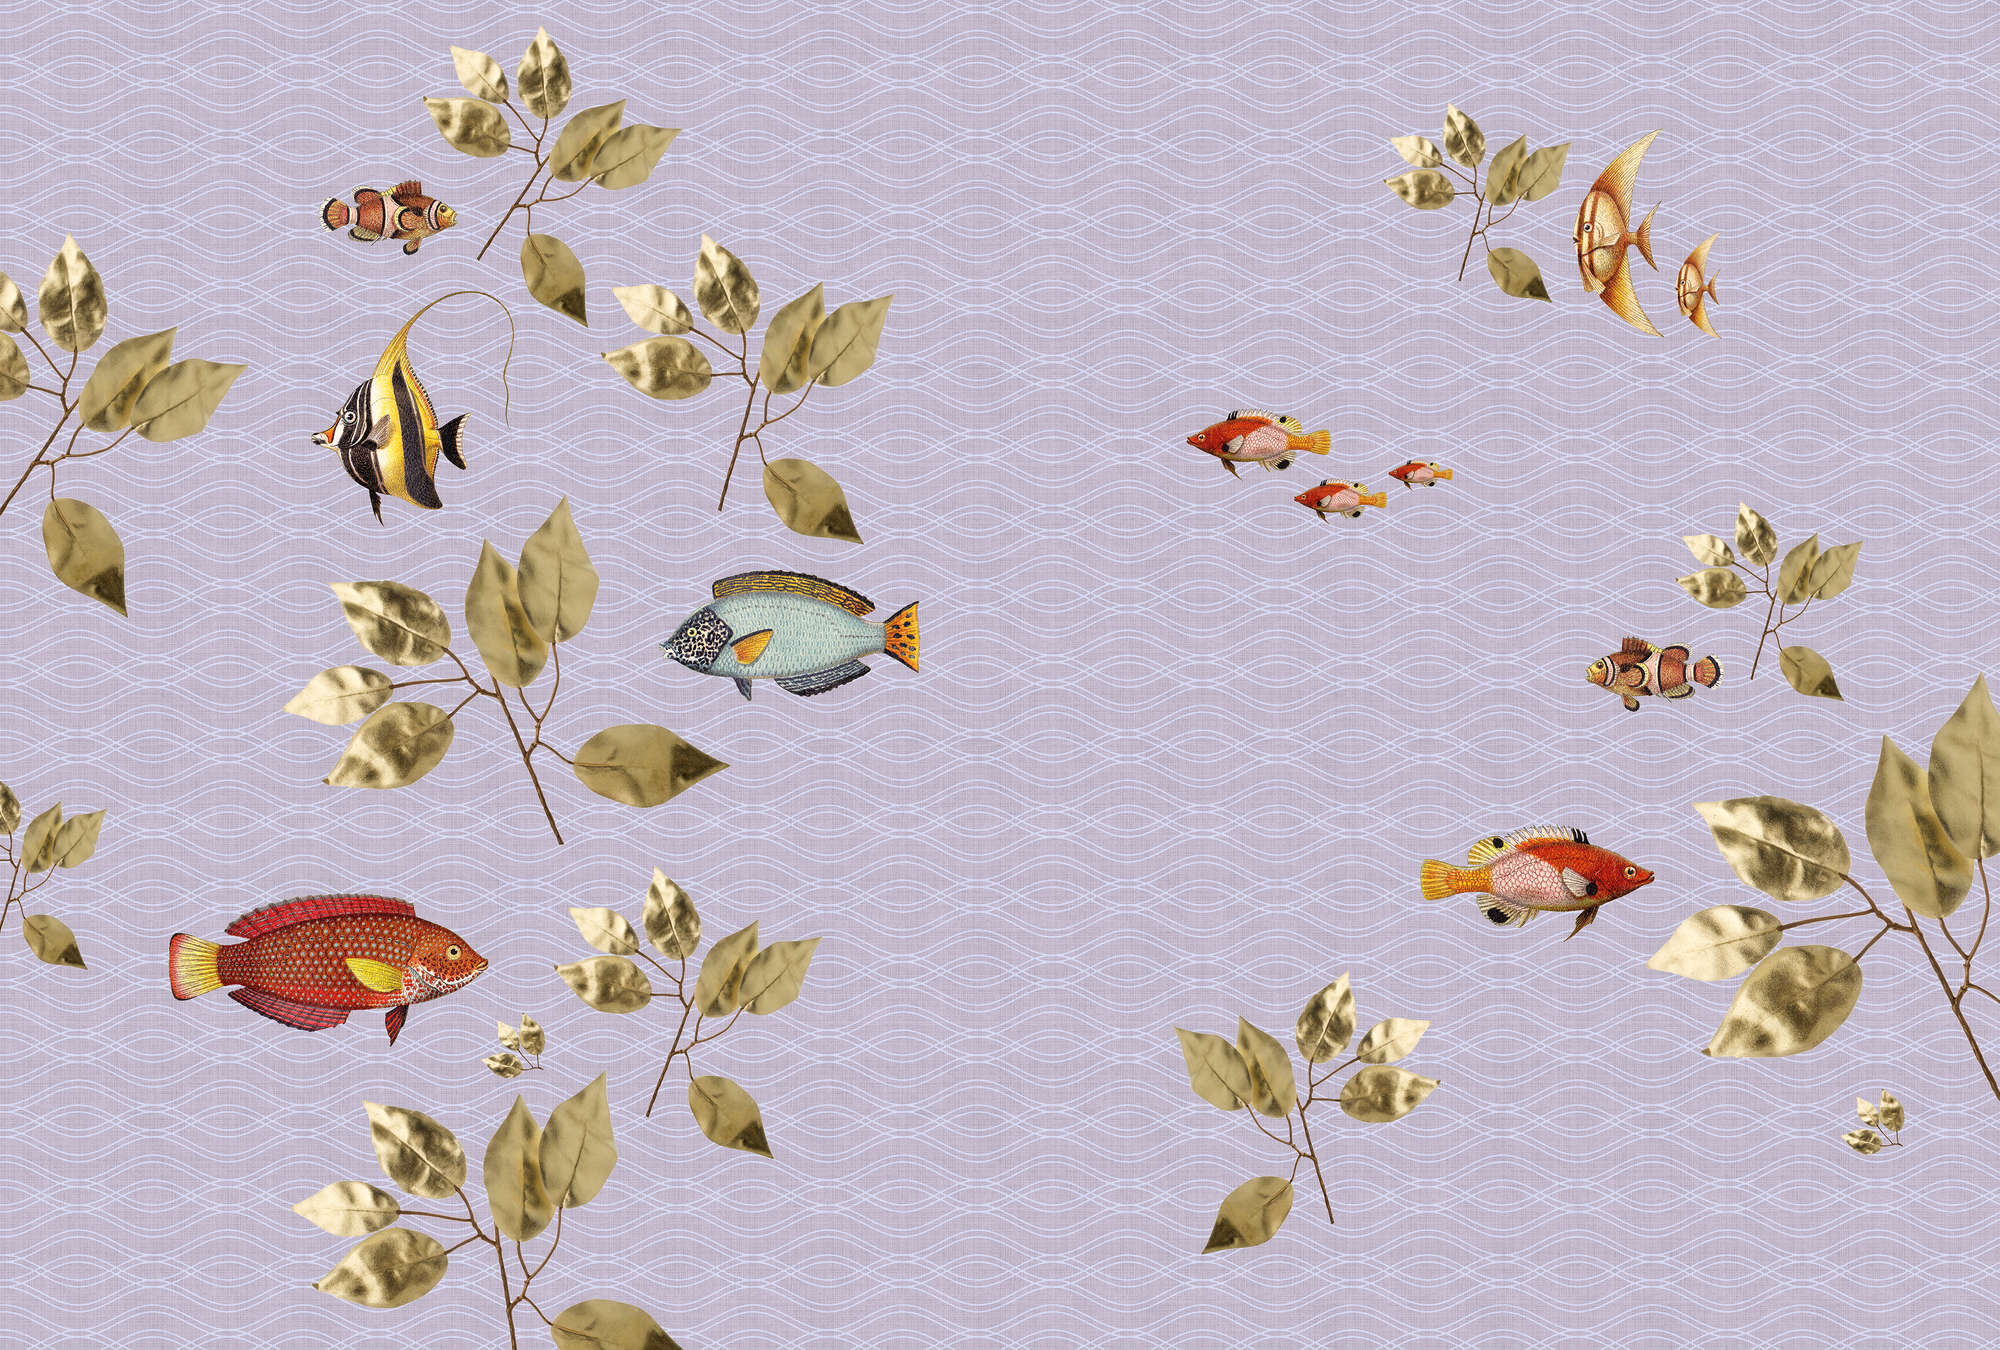             Briljante vis 2 - Visbehang in natuurlijke linnenstructuur met moderne stijlmix - Violet | Premium glad vlies
        